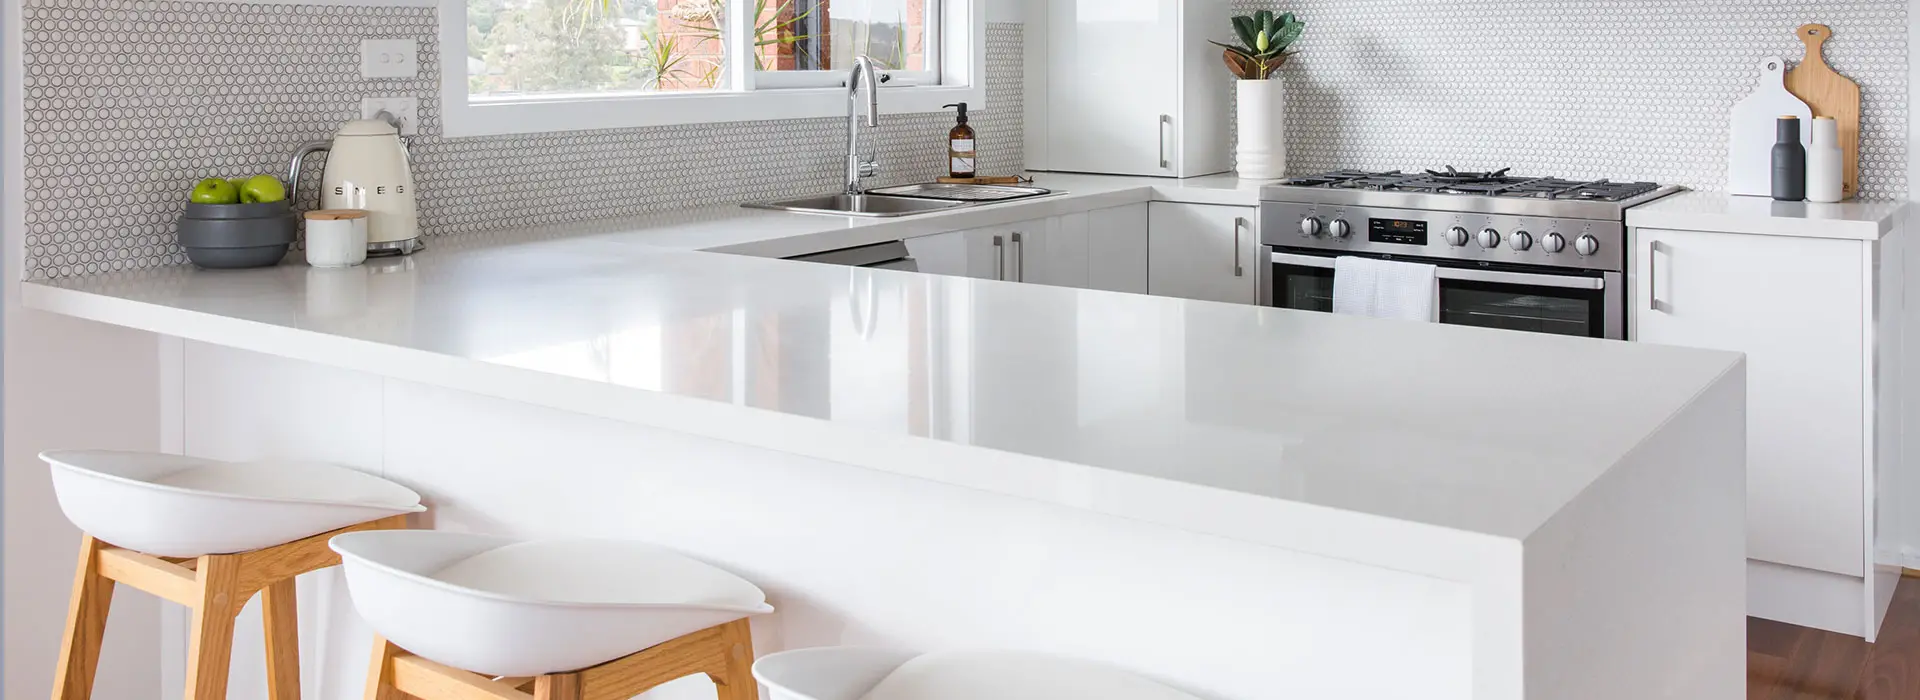 white u shaped gloss kitchen with kitchen stools